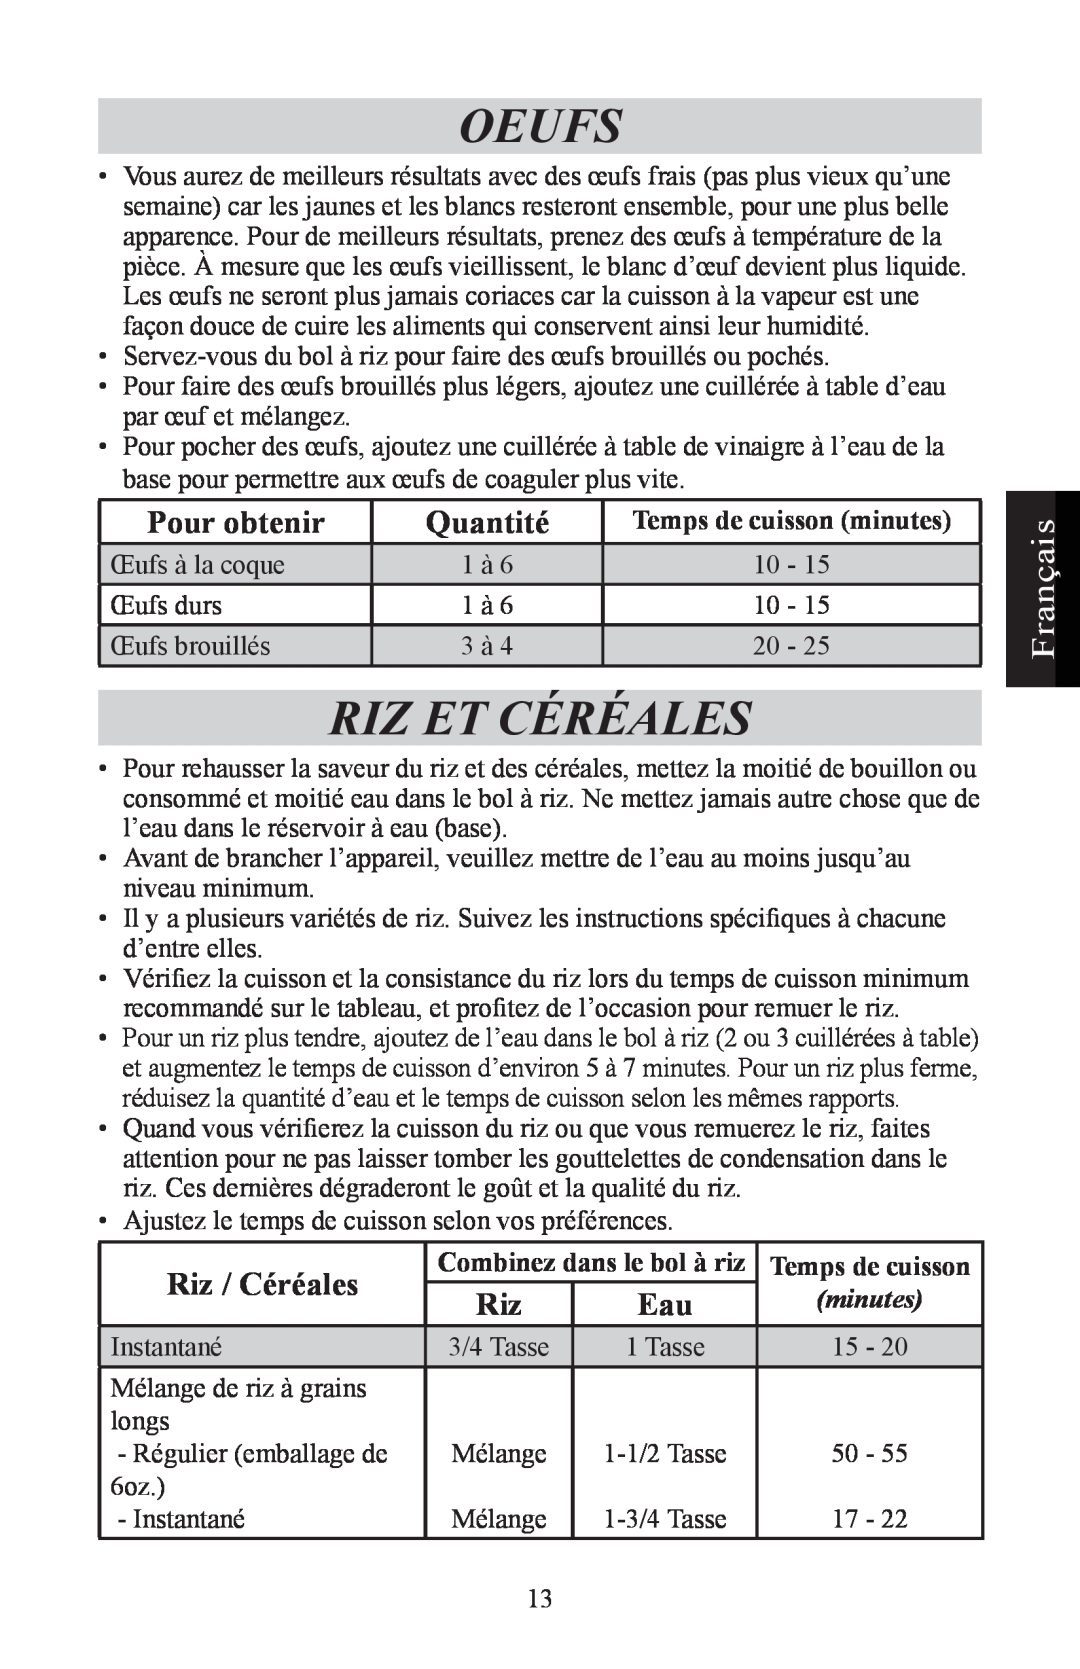 Nesco ST-24 manual Oeufs, Riz Et Céréales, Pour obtenir, Quantité, Riz / Céréales, Français, Temps de cuisson minutes 